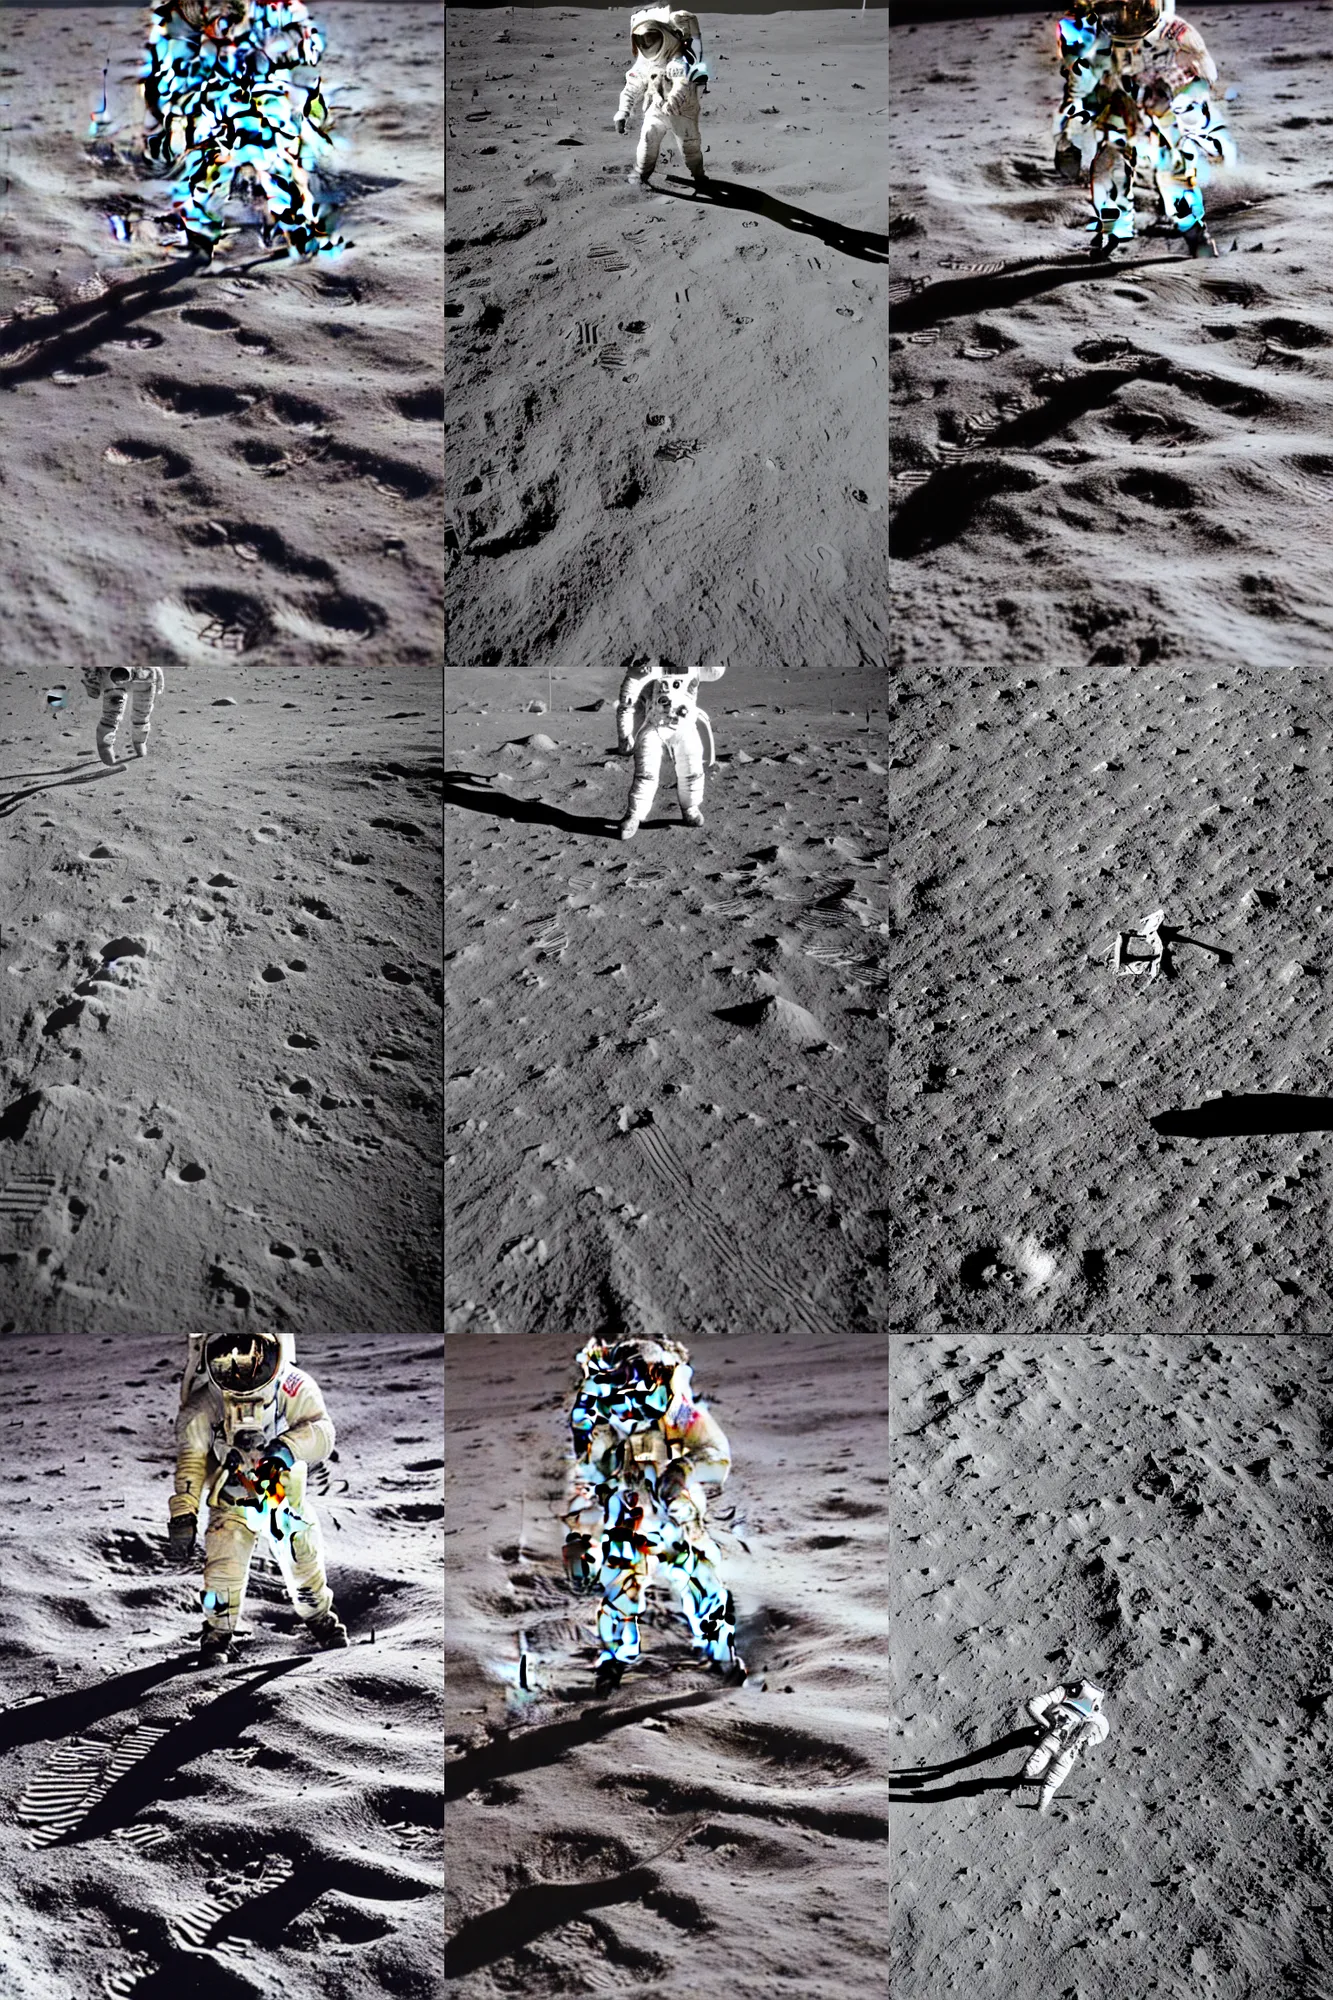 Prompt: nasa photo of a marathon runner on the moon, 1 9 6 9,